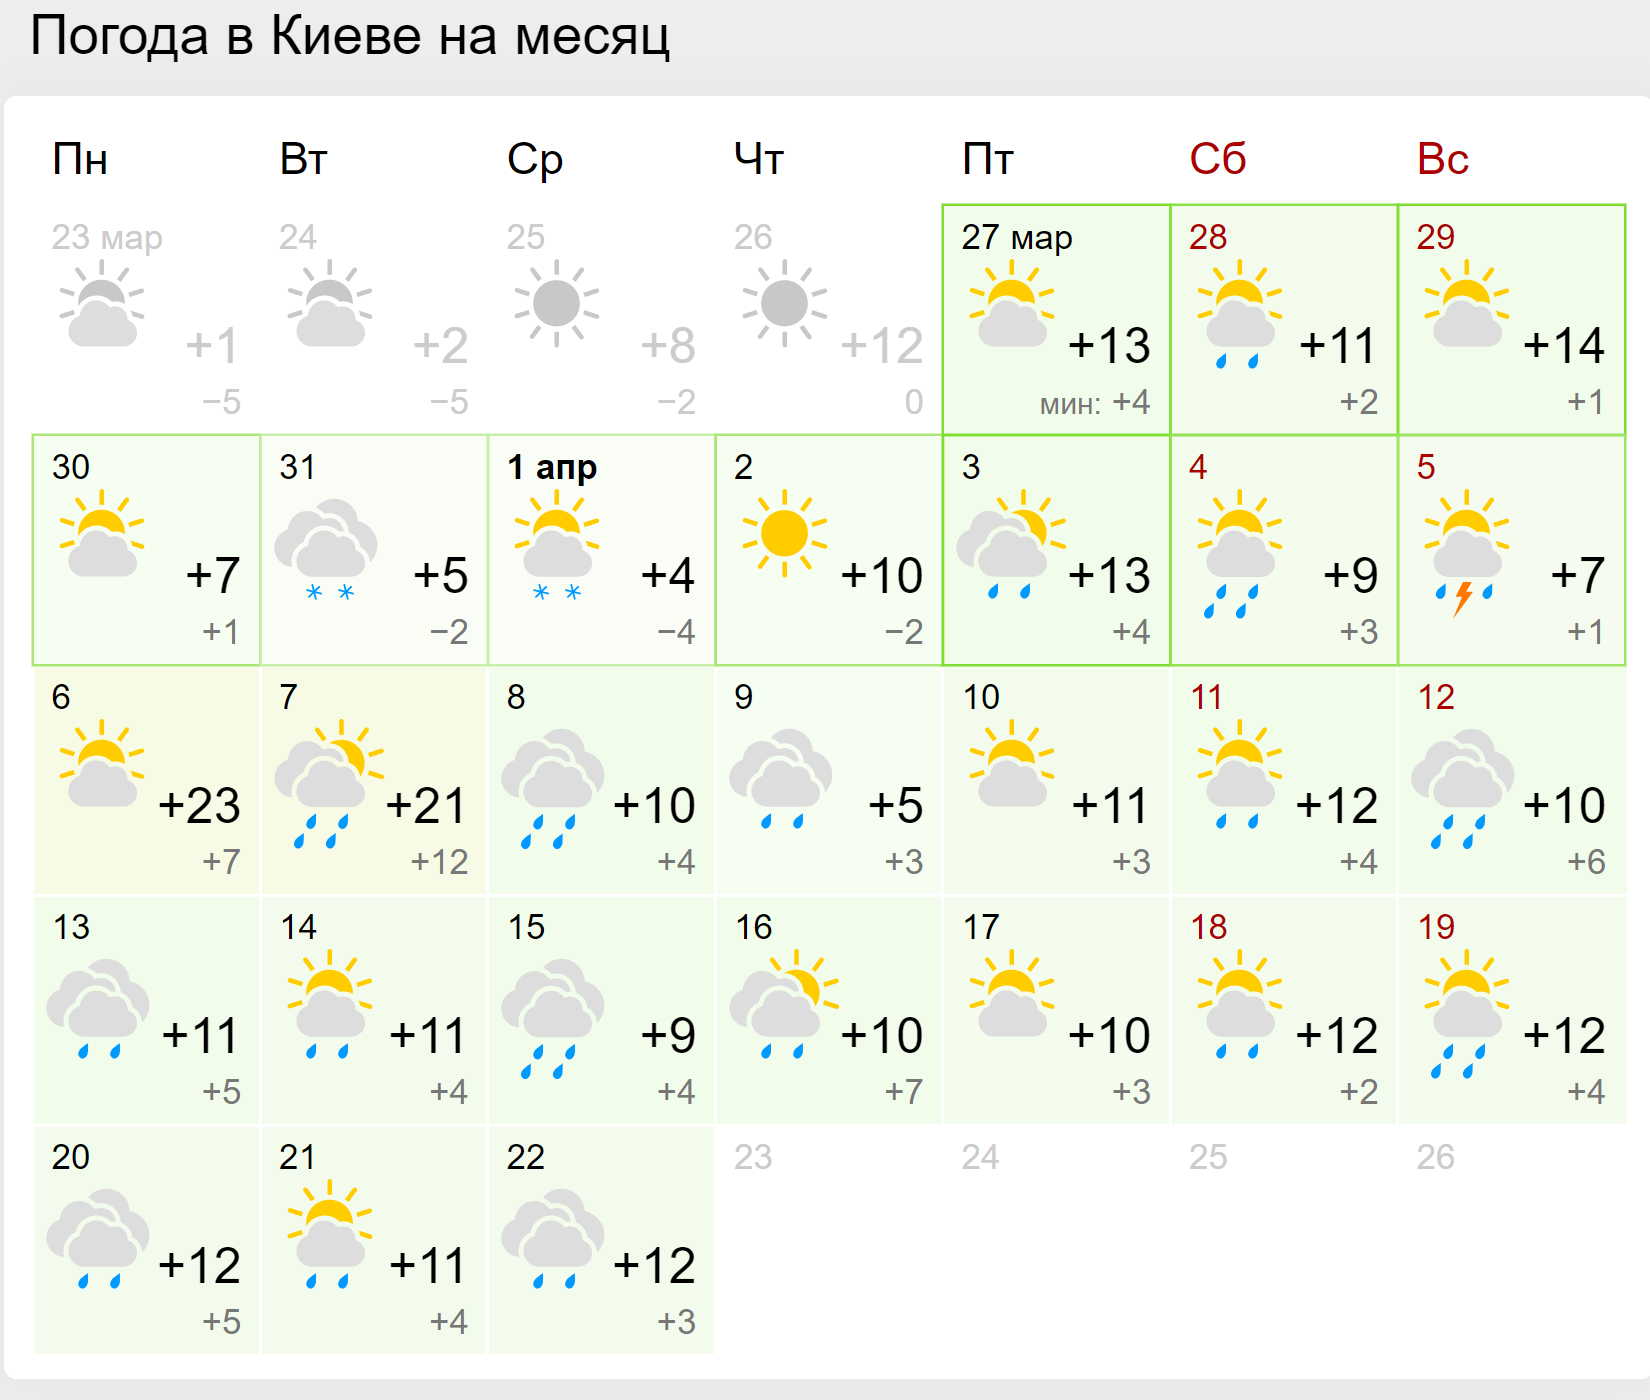 Прогноз погоди на квітень 2020 року у Києві